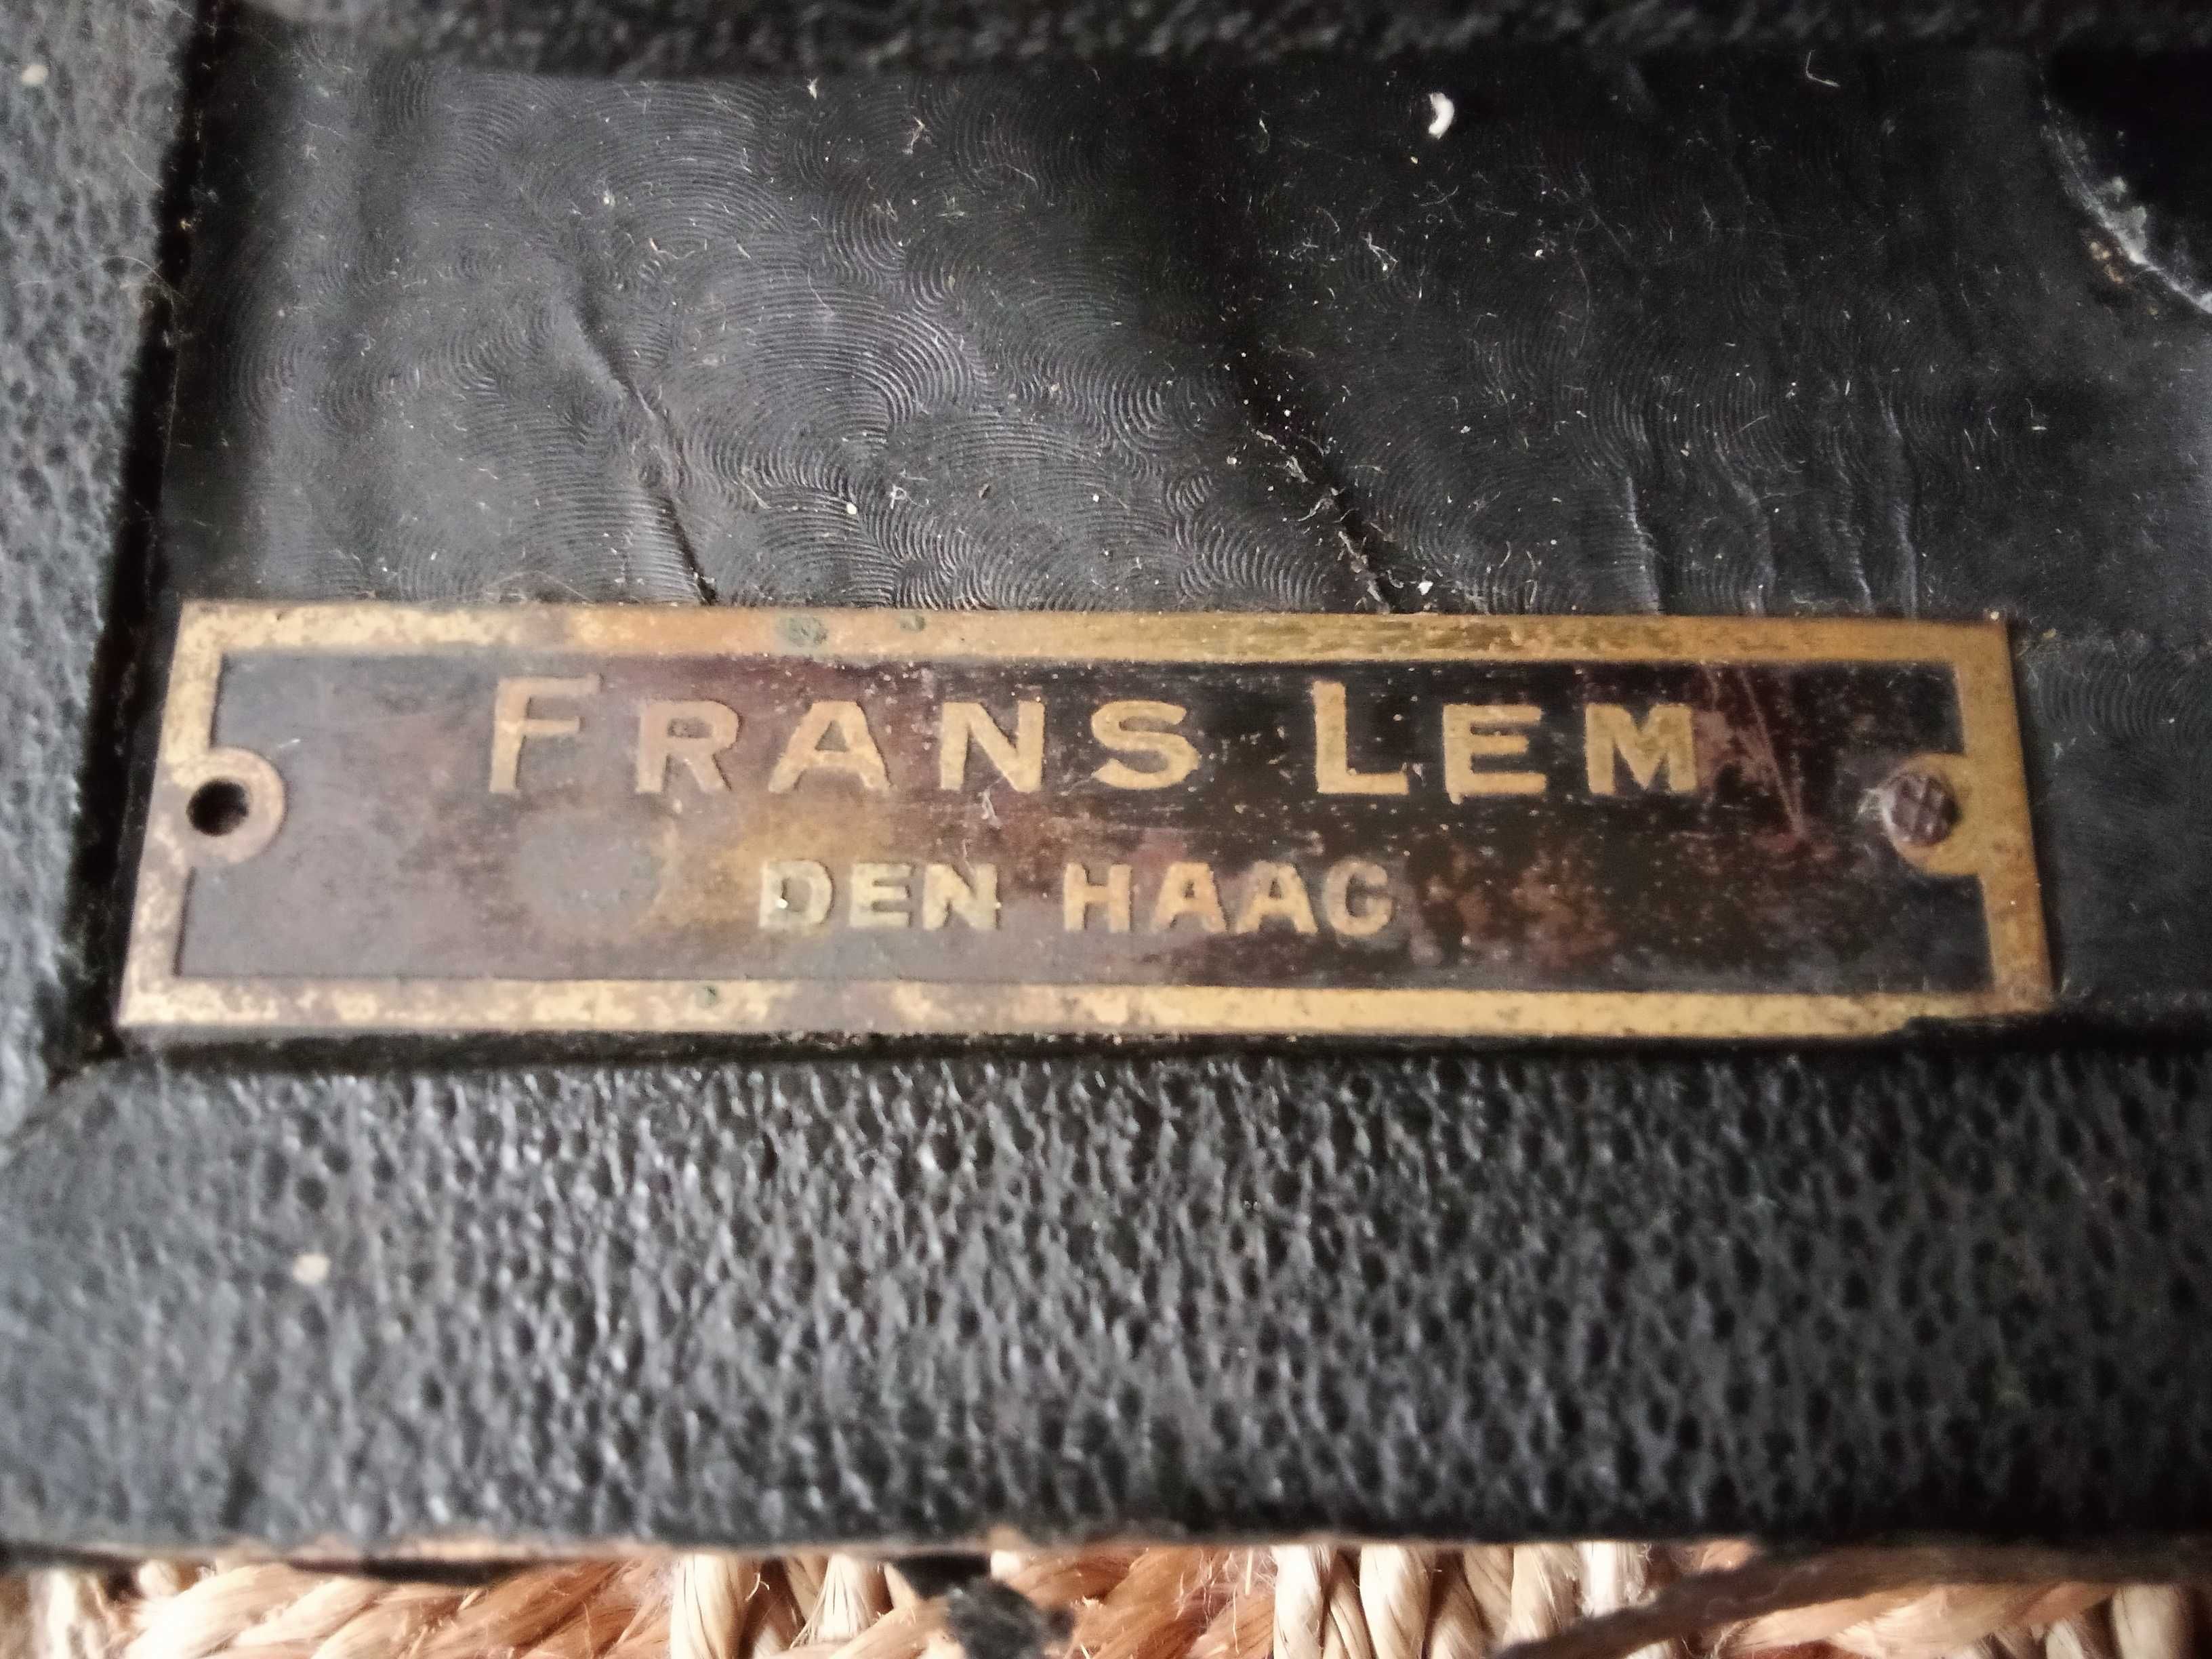 Германска пишеща машина RHEINMETALL 1938 г.